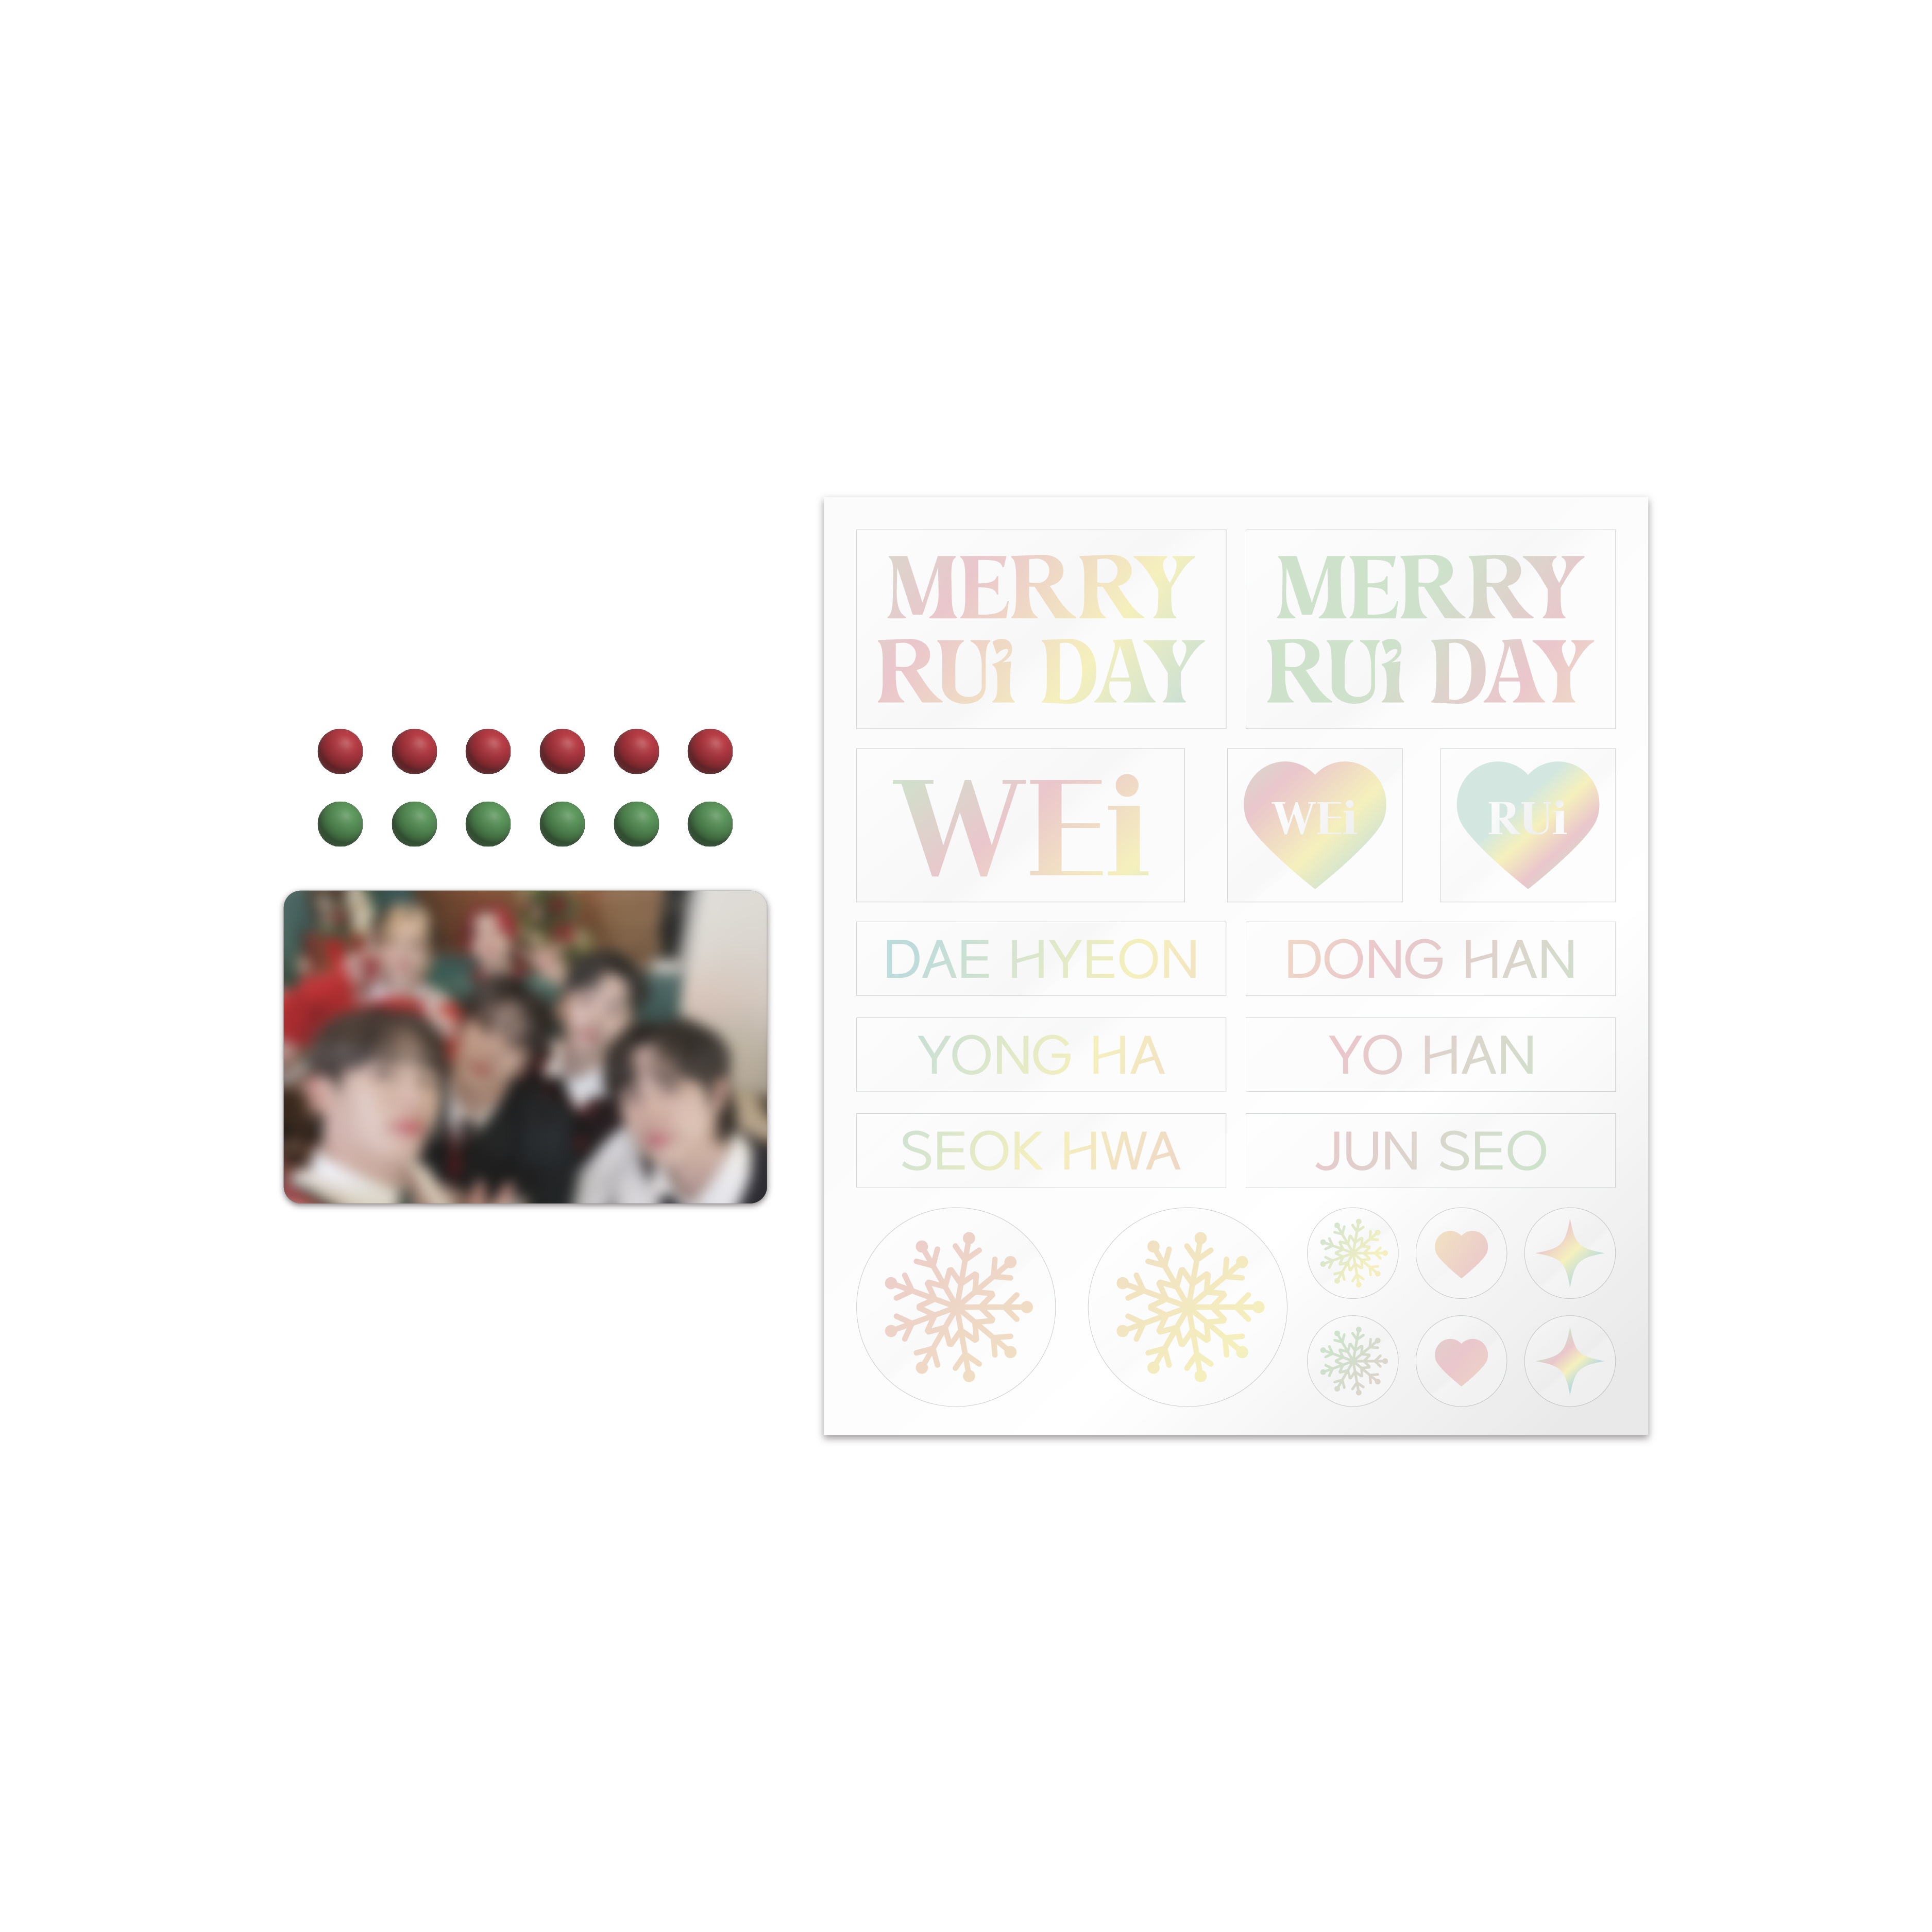 위아이(WEi) - MERRY RUi DAY 응원봉 데코 세트(Light Stick Deco Set)케이팝스토어(kpop store)